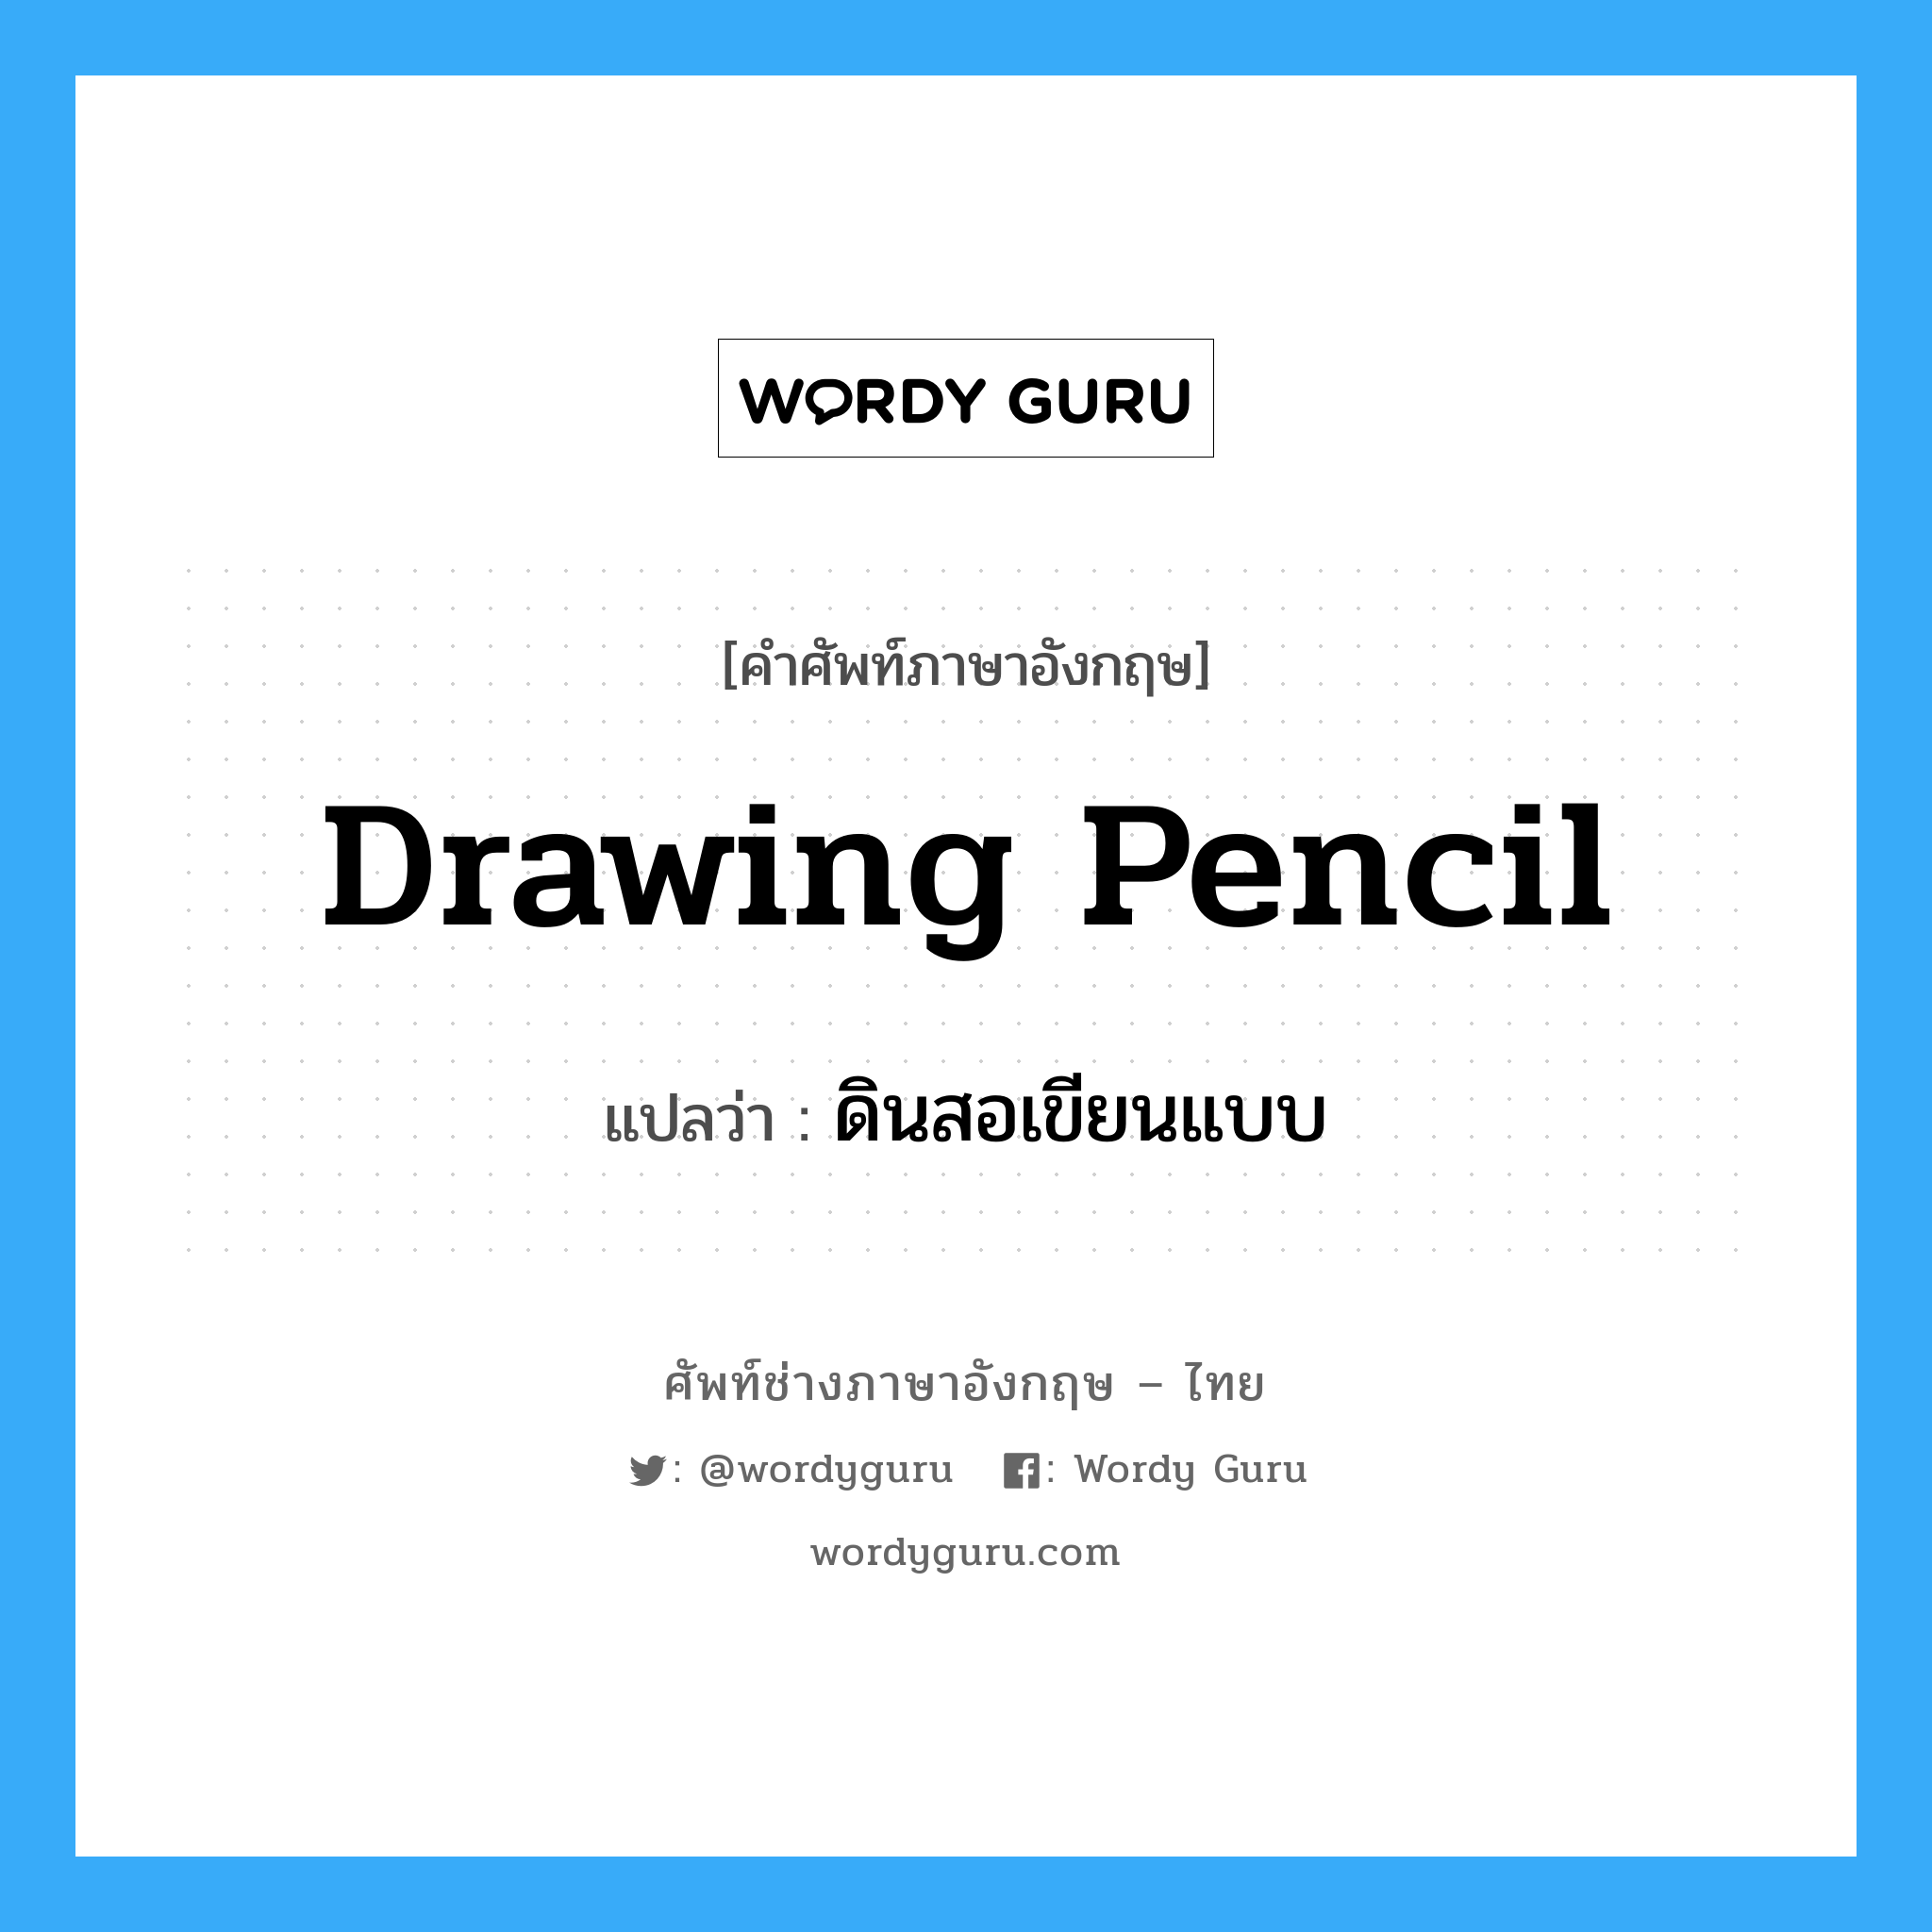 ดินสอเขียนแบบ ภาษาอังกฤษ? | Wordy Guru